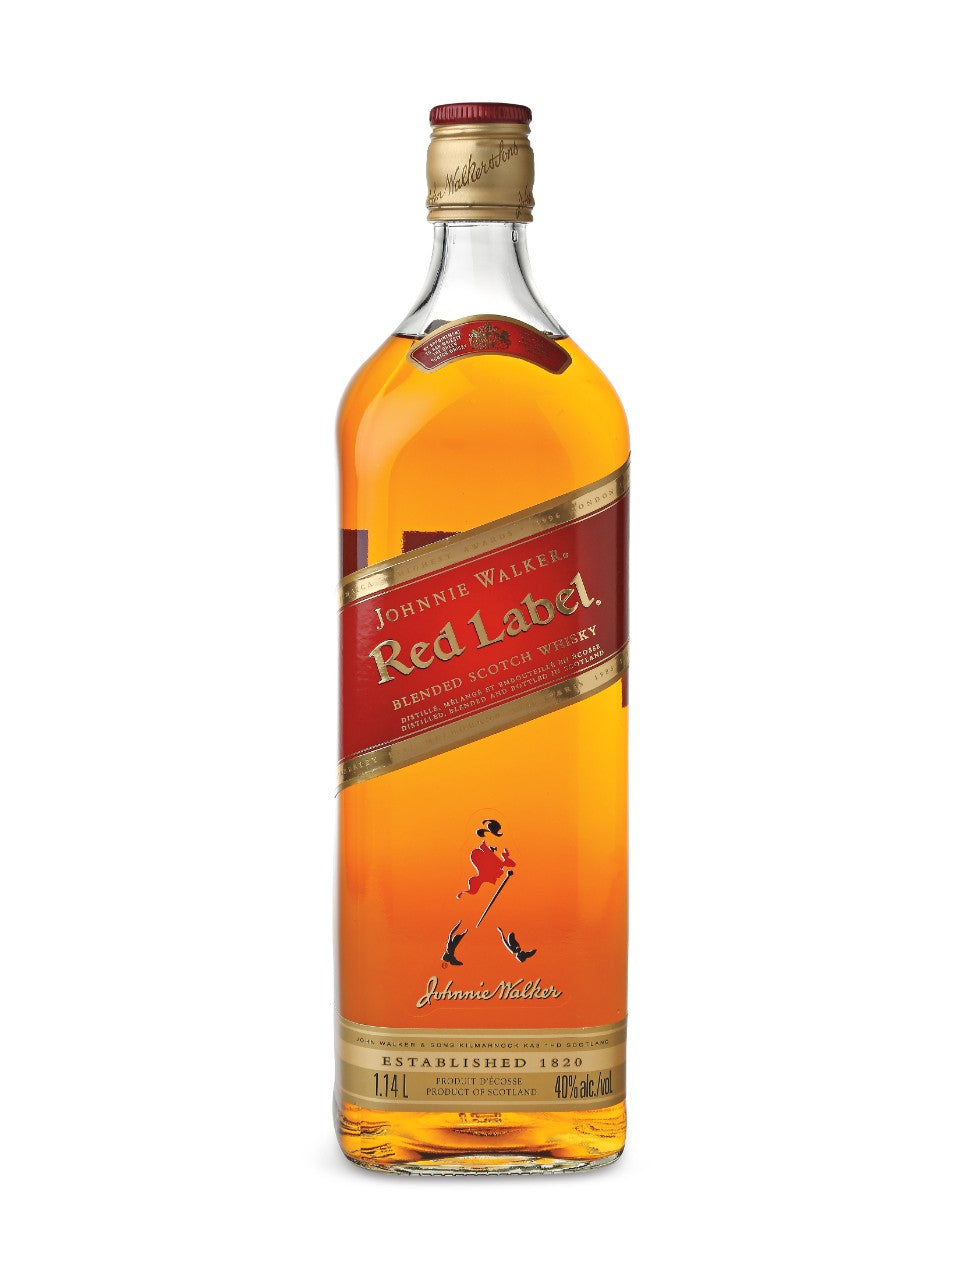 Johnnie Walker Red Label Scotch Whisky 1140 mL bottle